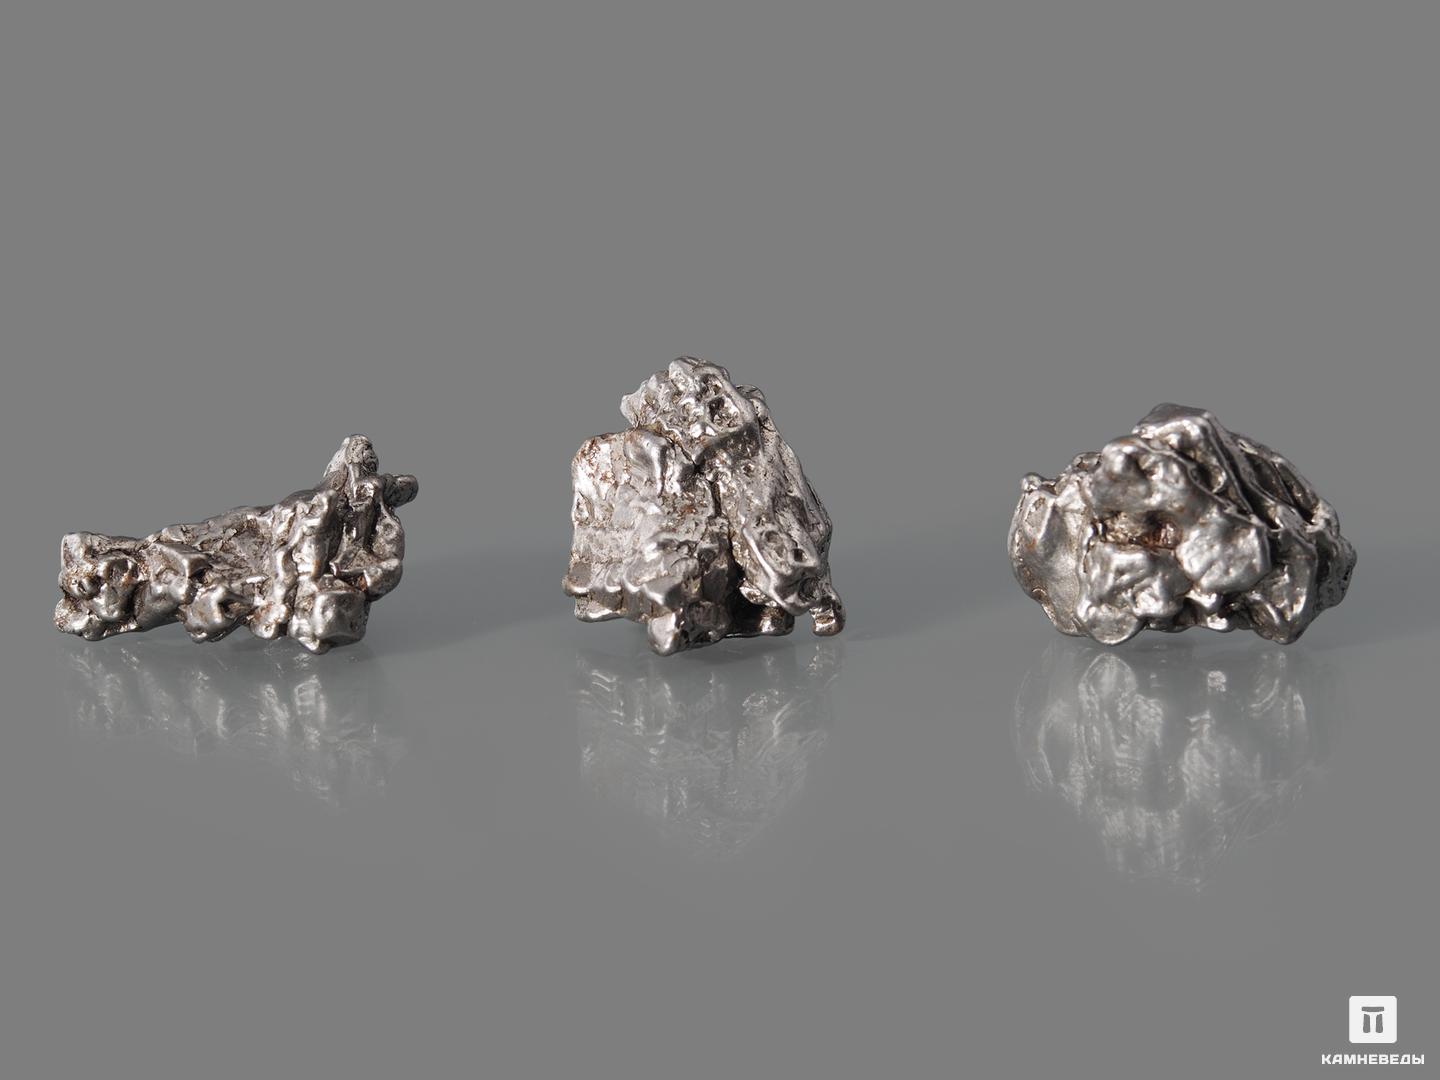 Метеорит Кампо-дель-Сьело, осколок 2-3,5 см (24-26 г), 10-626/2, фото 2